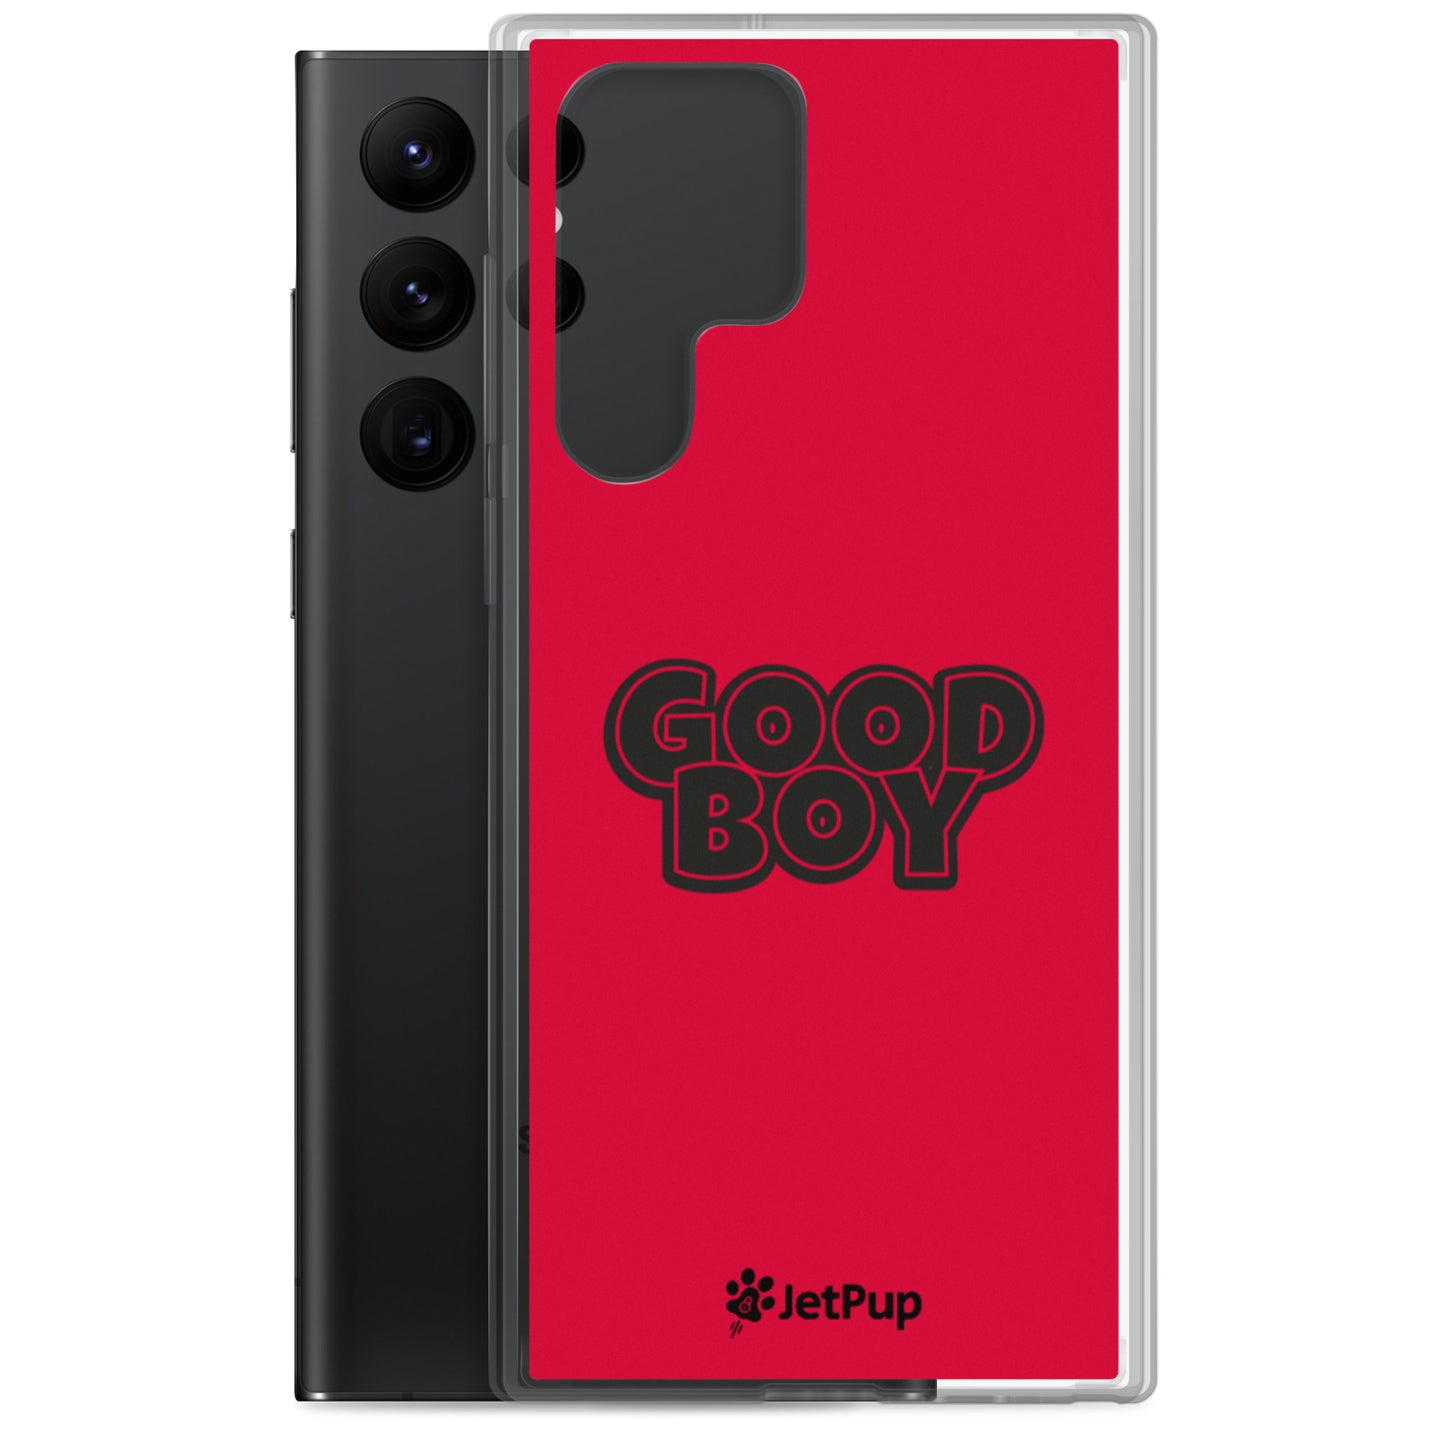 Good Boy Samsung Case - Red